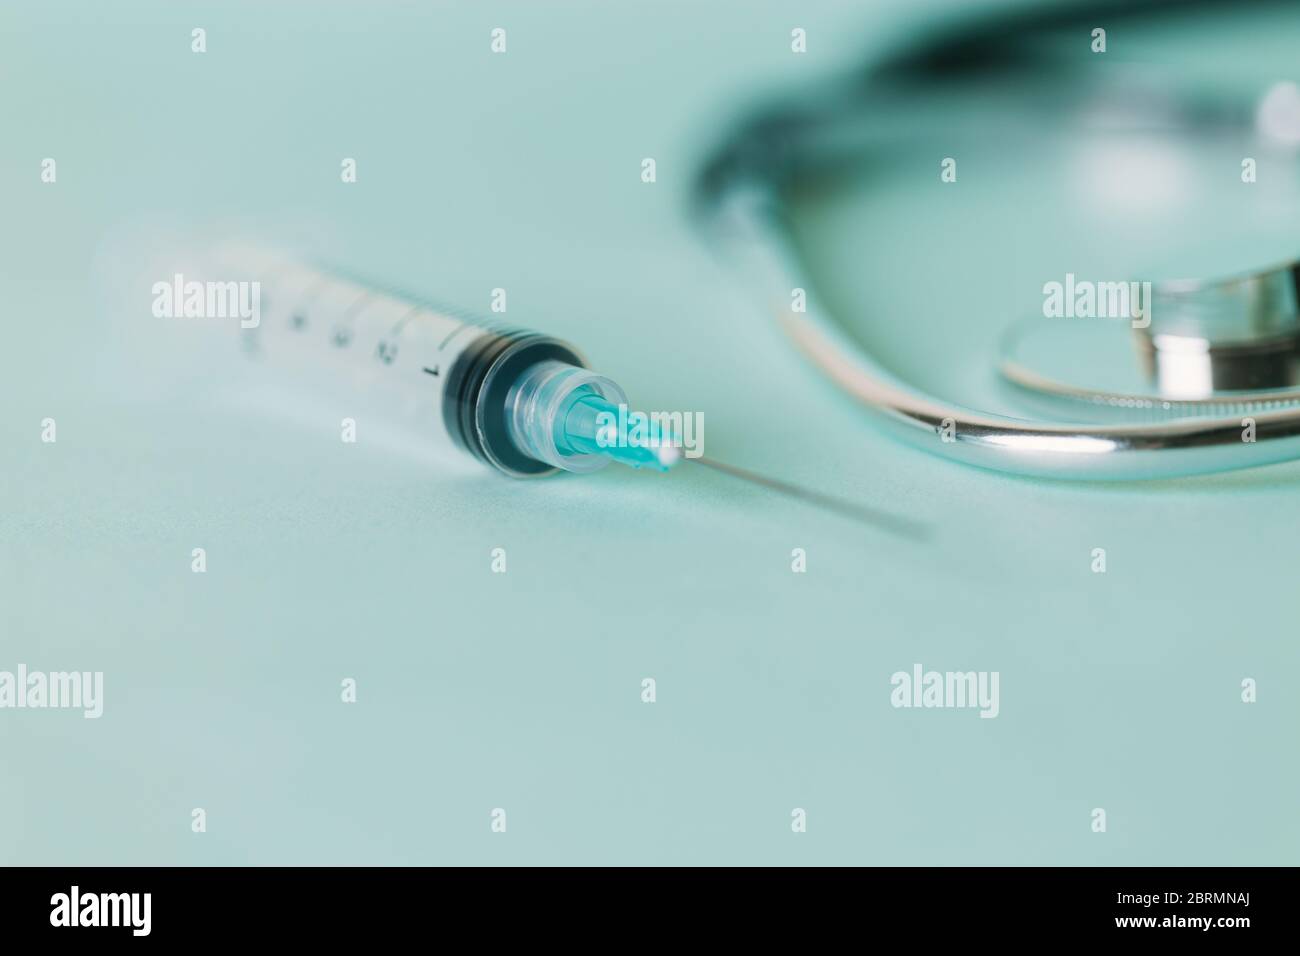 Eine neue sterile Spritze neben einem Stethoskop Stockfoto